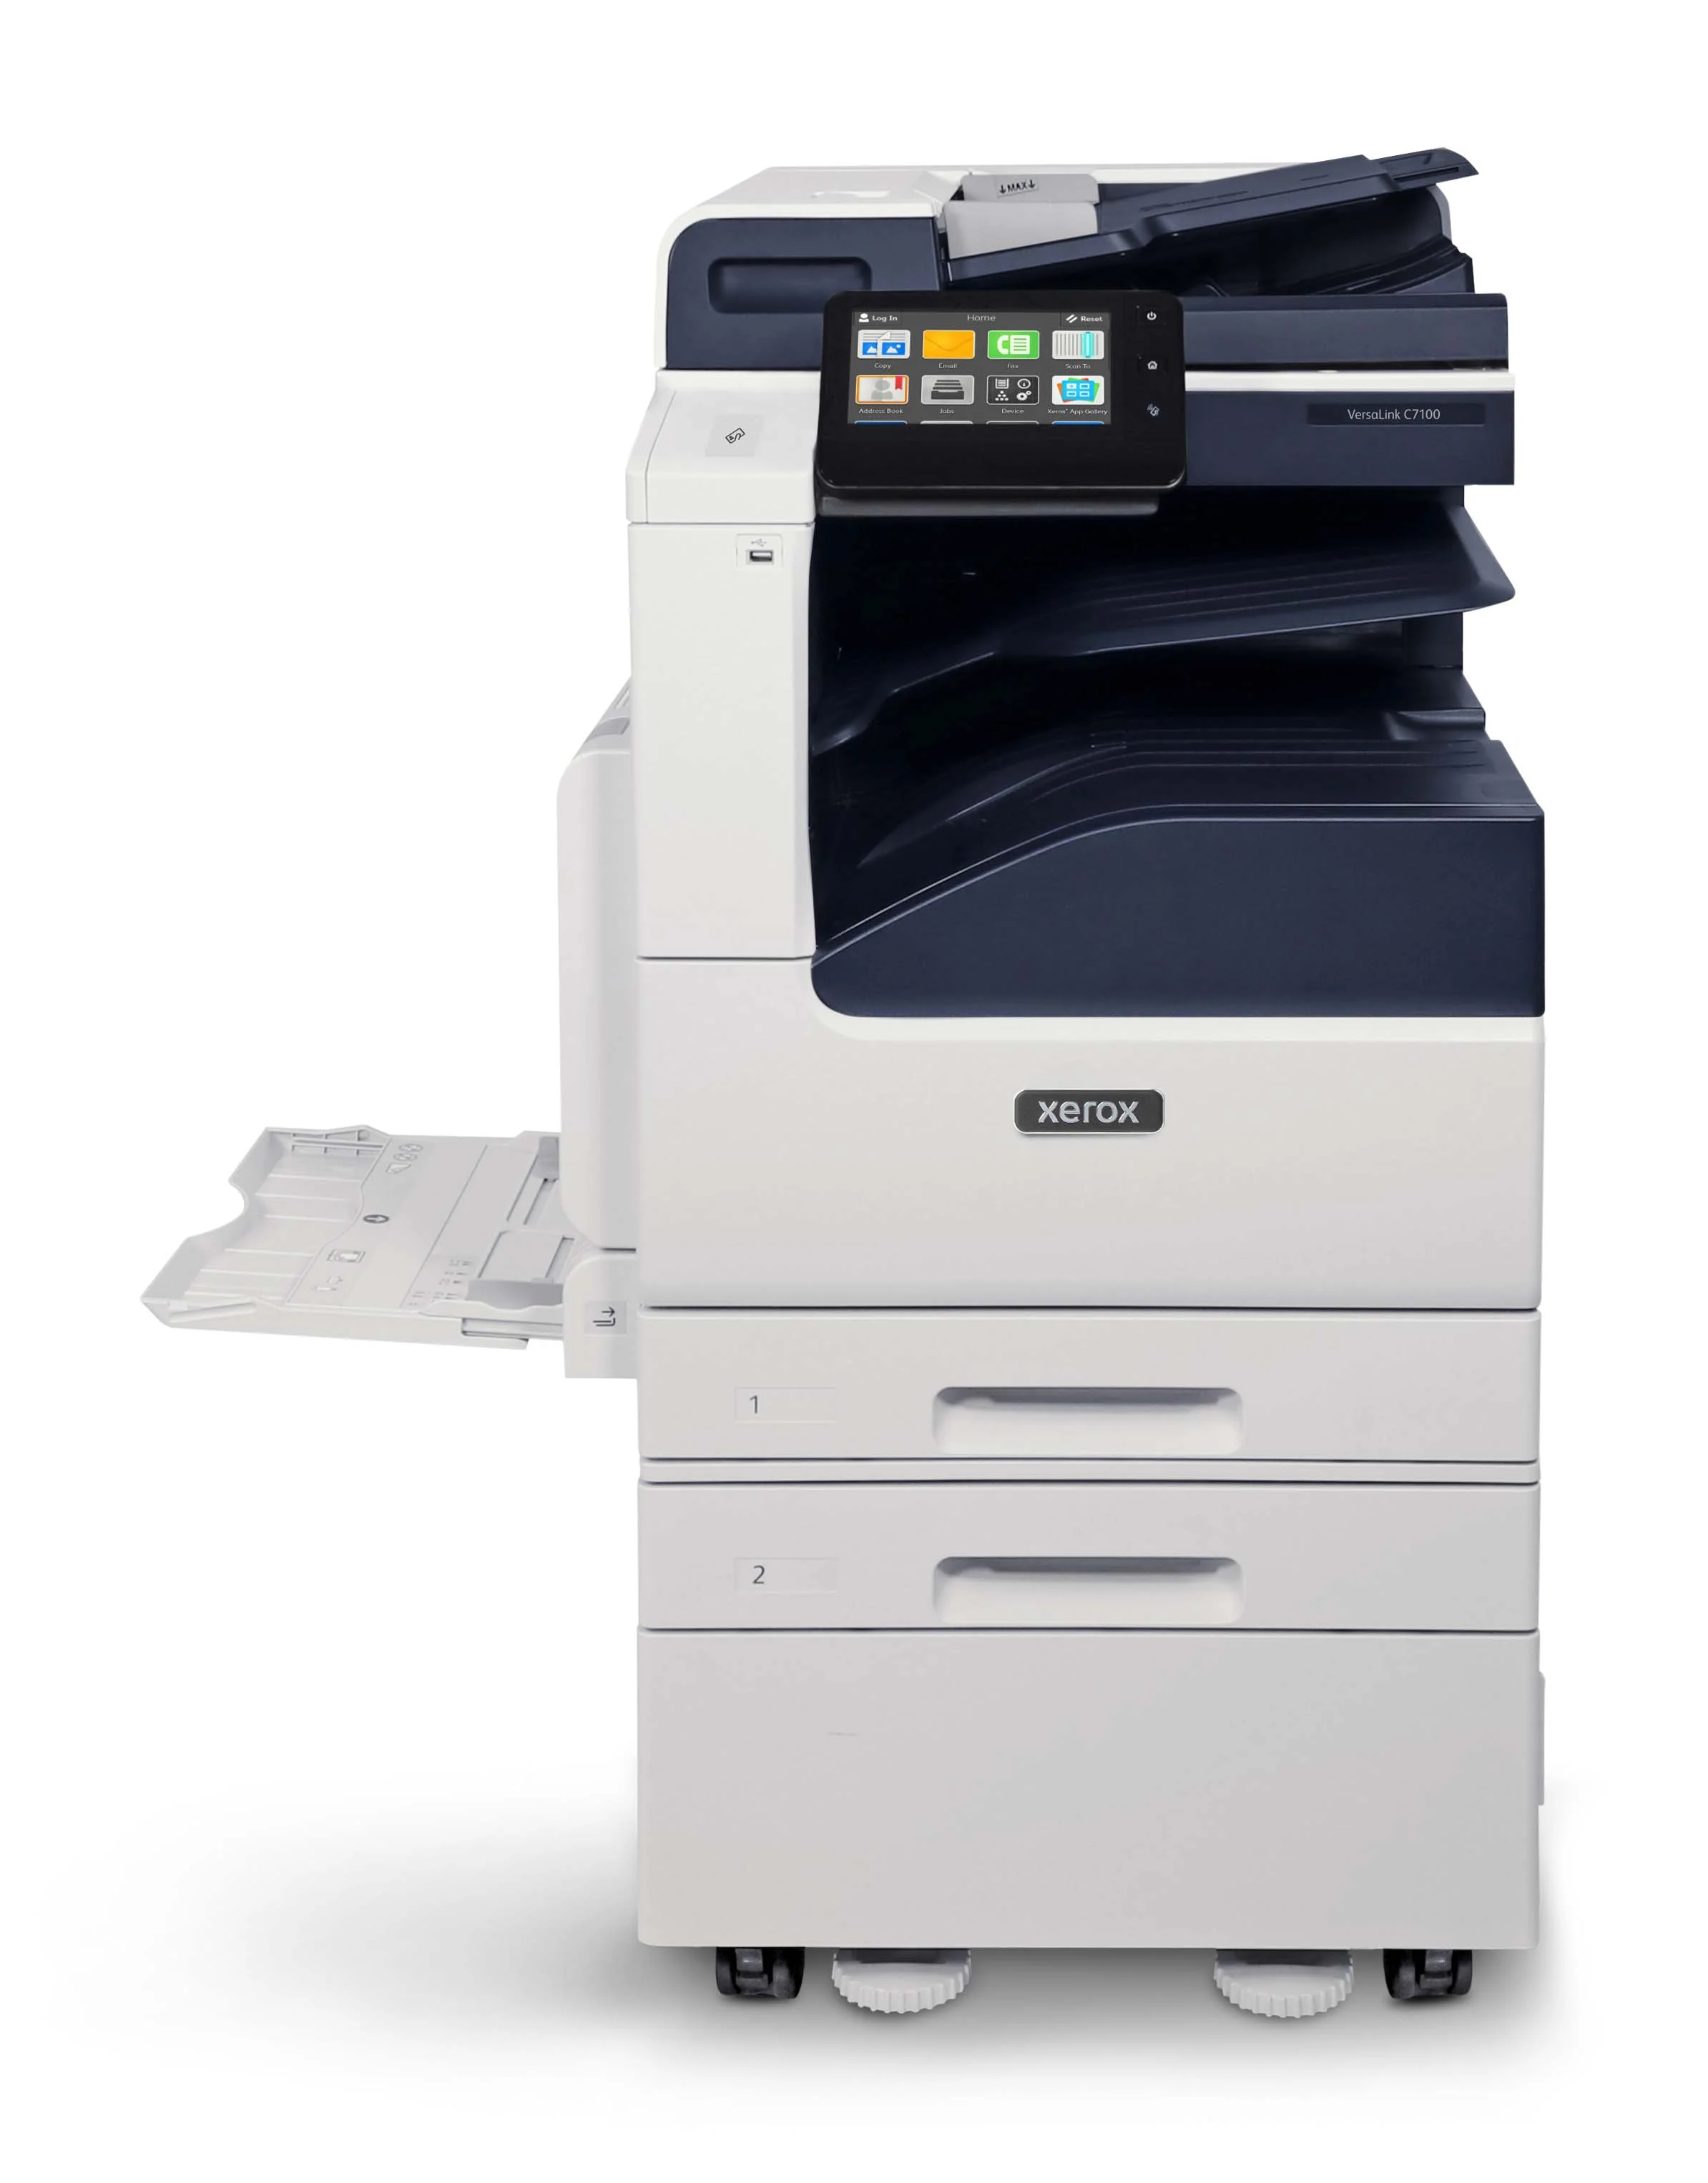 Xerox® VersaLink® C7100 színes többfunkciós nyomtatósorozat